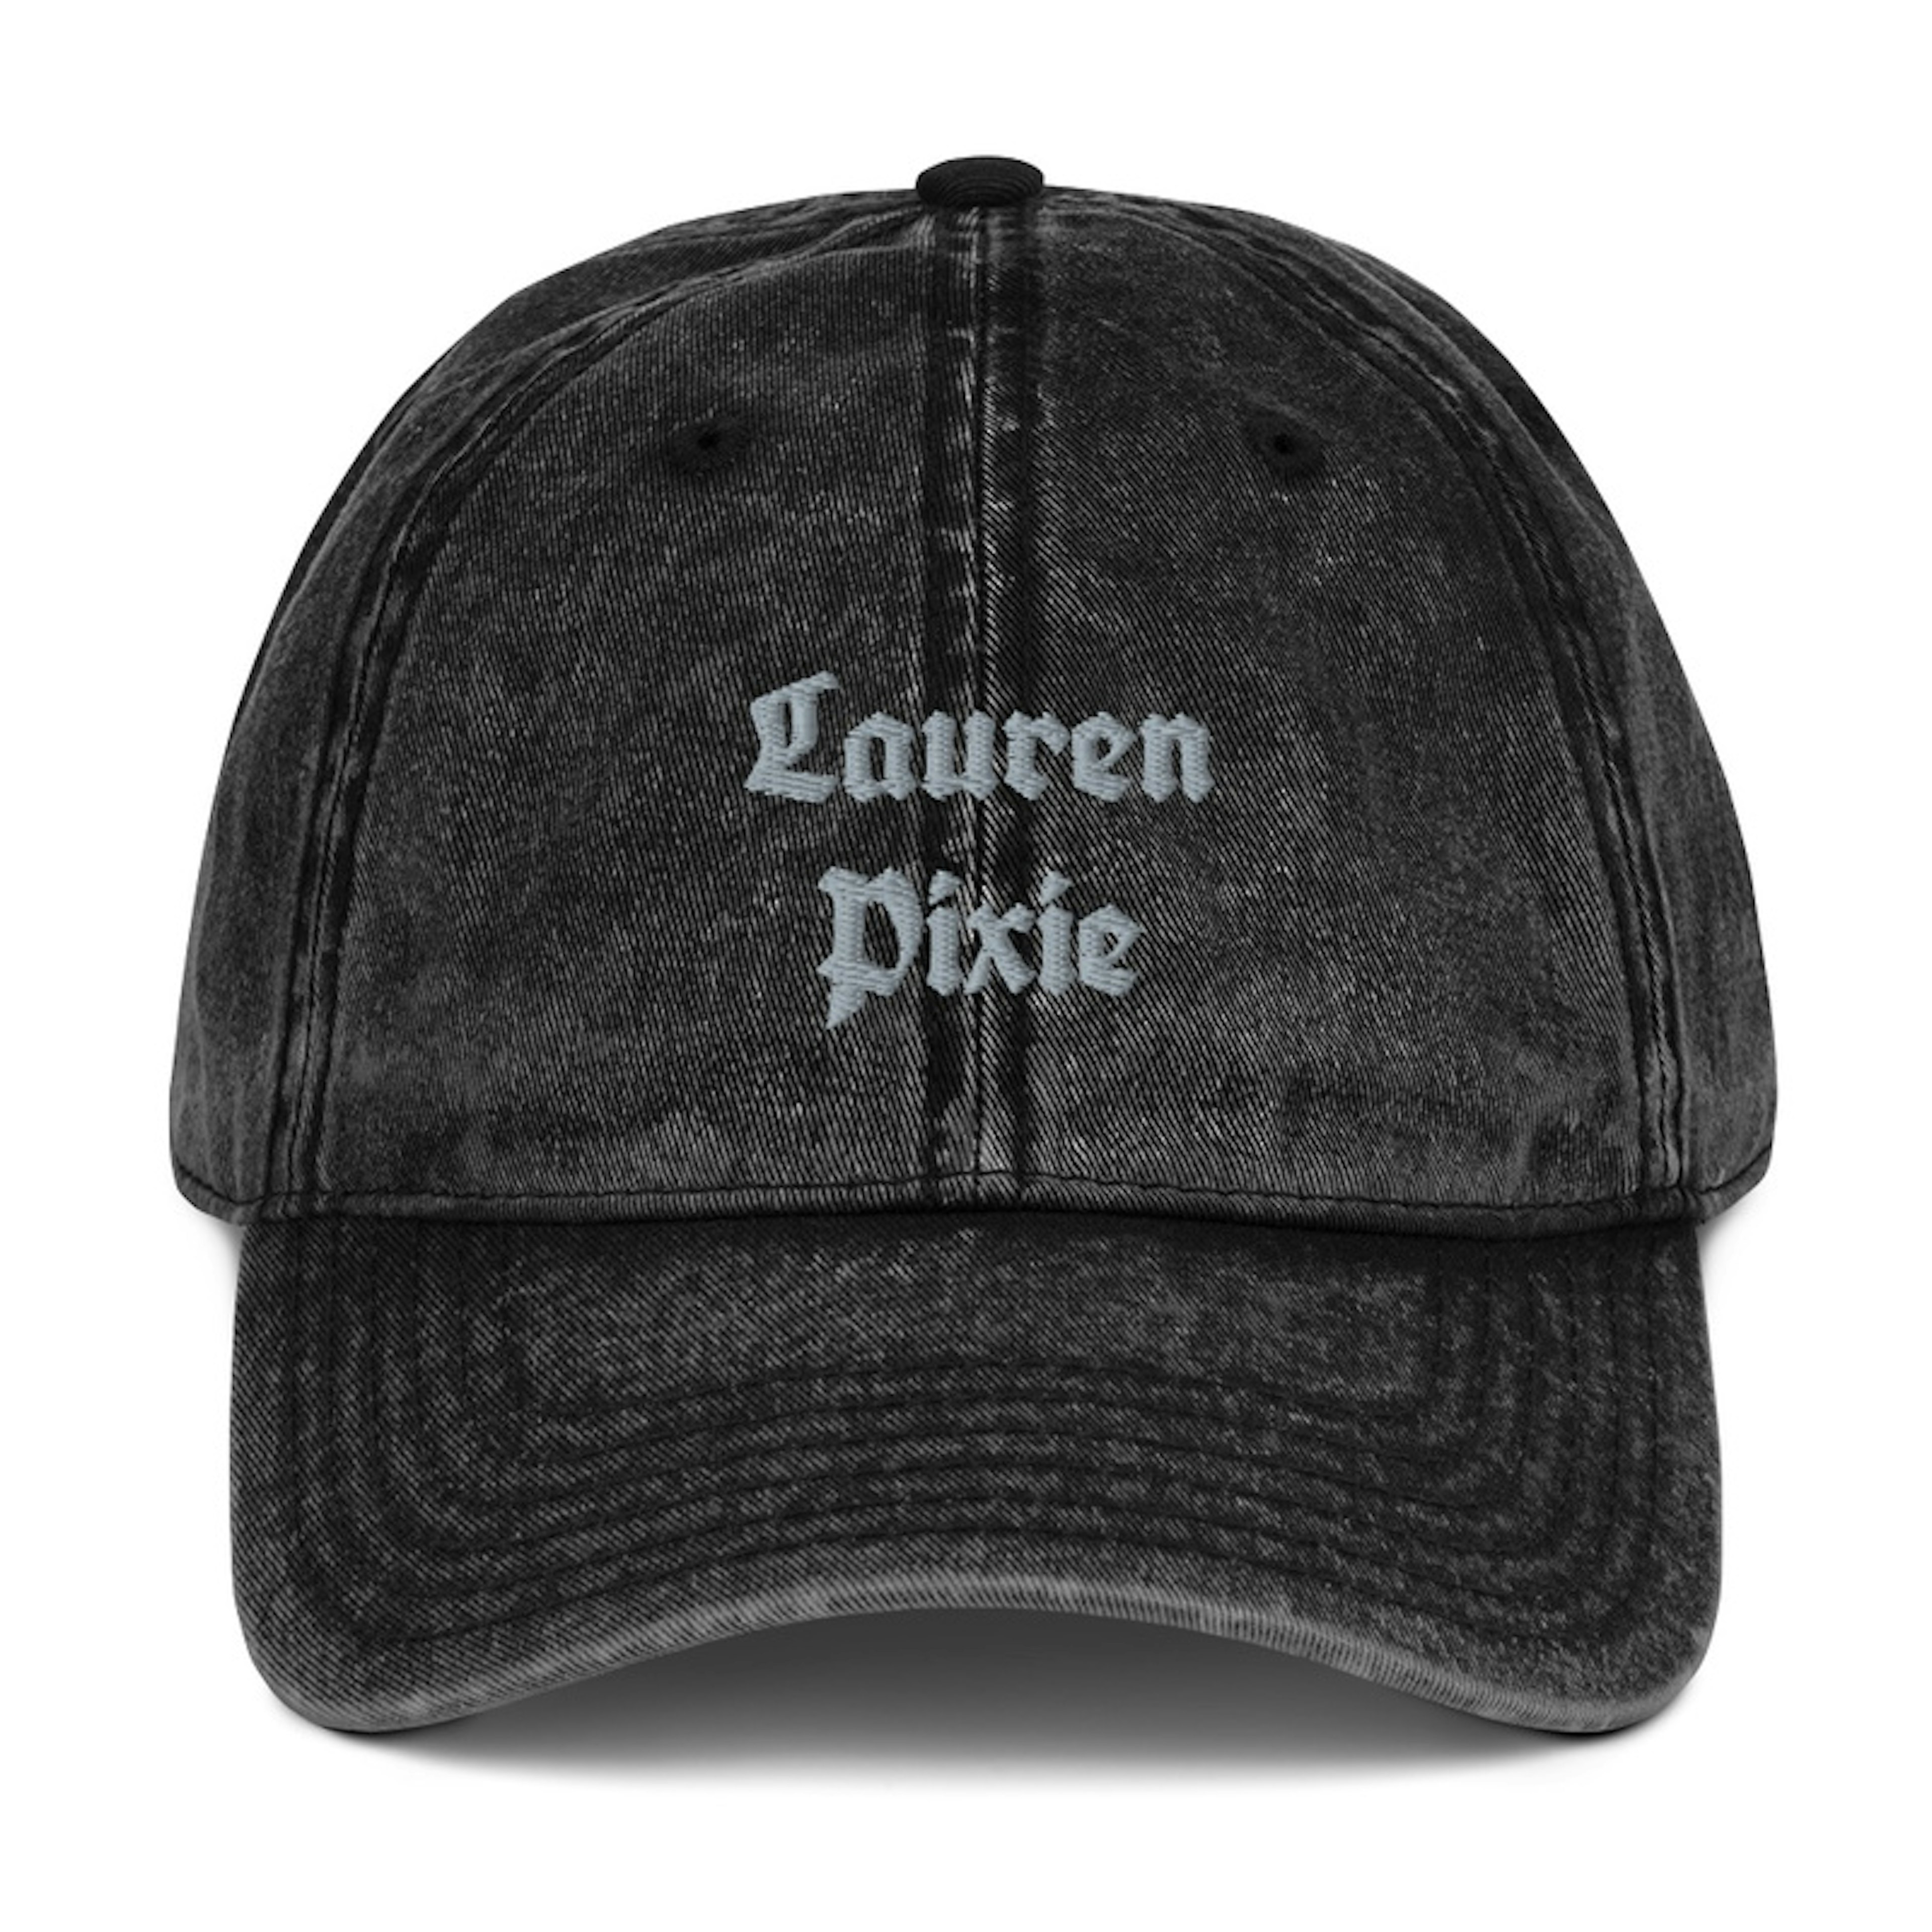 Lauren pixie hat 